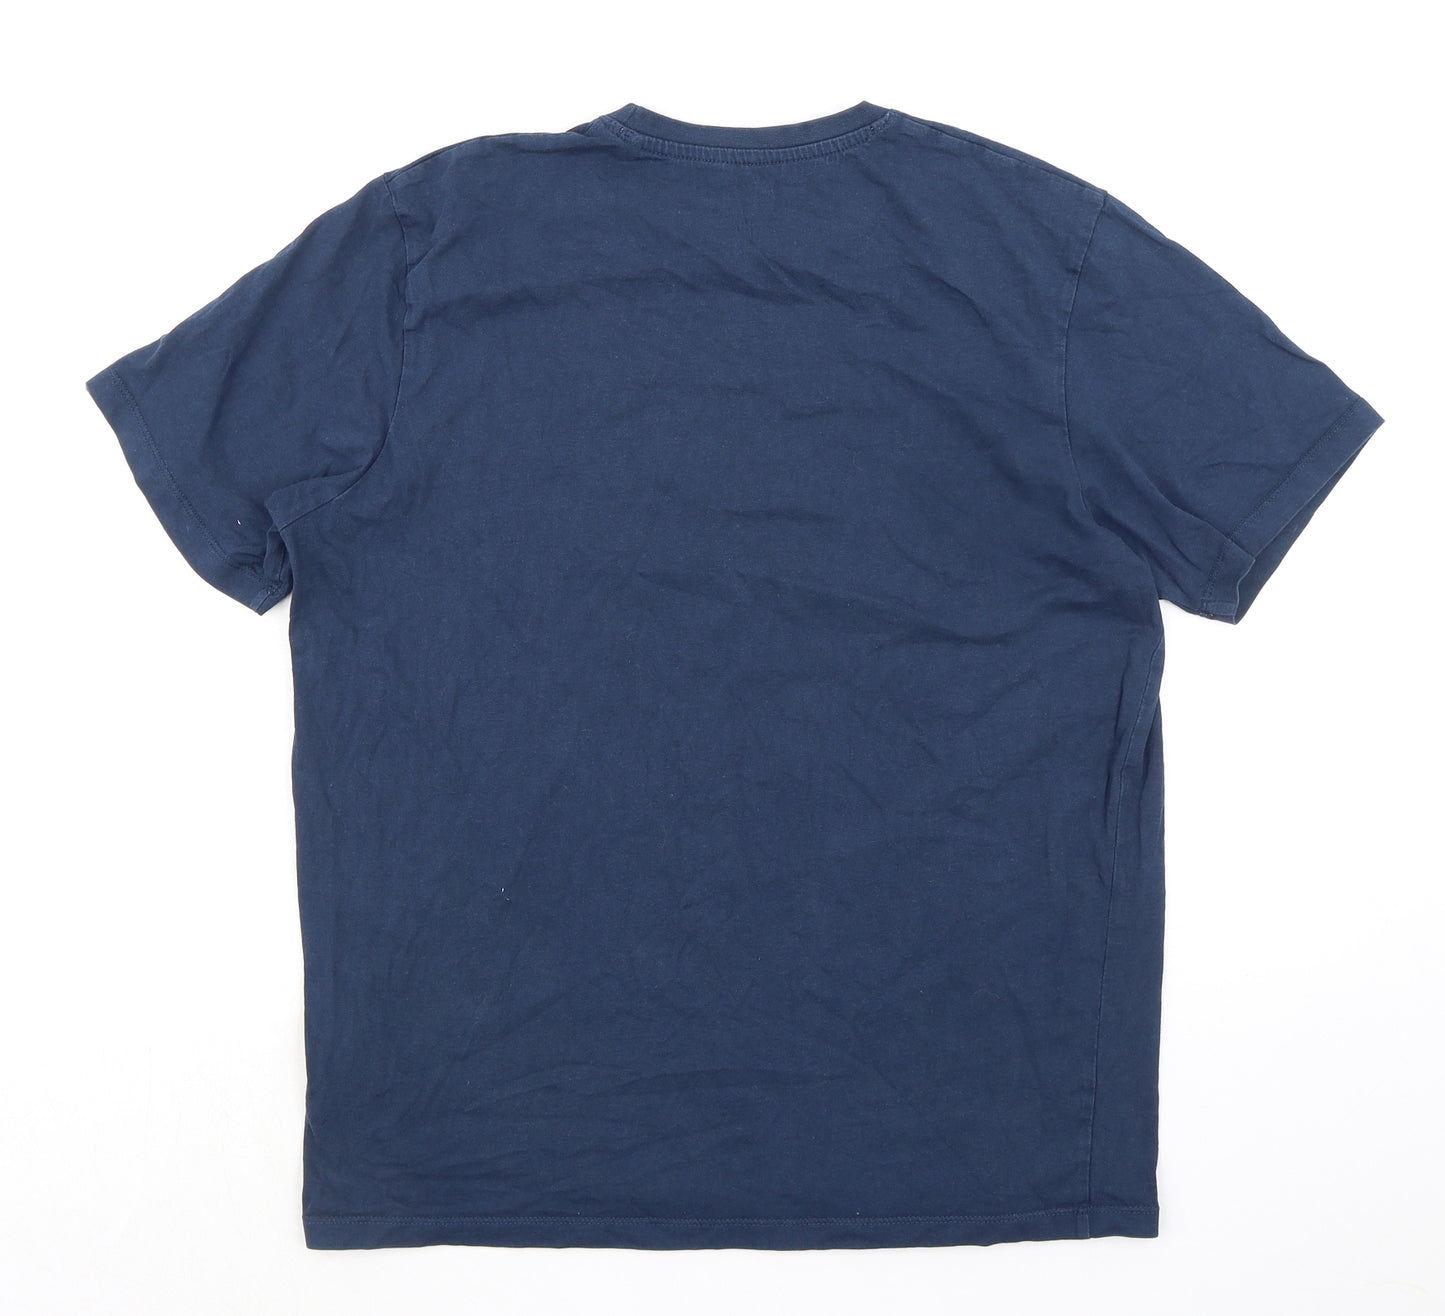 RAB Mens Blue Cotton T-Shirt Size L Crew Neck